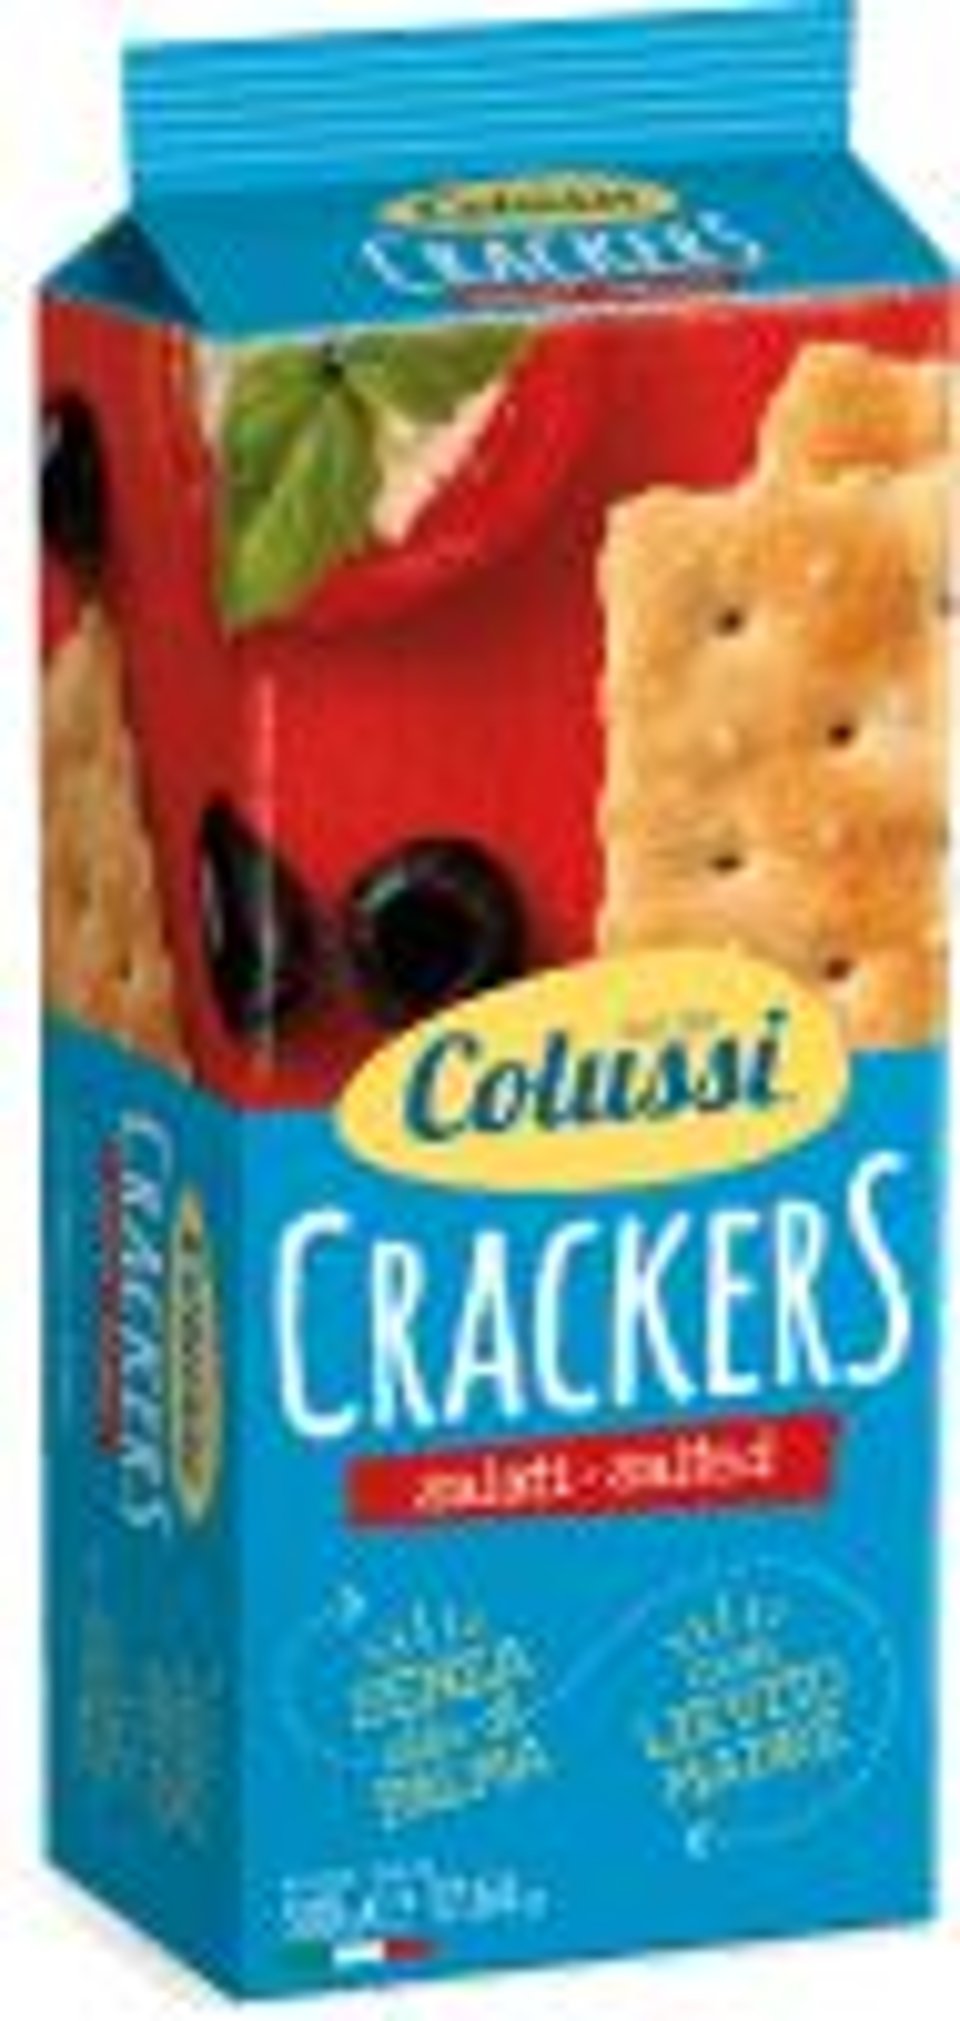 Colussi Crackers